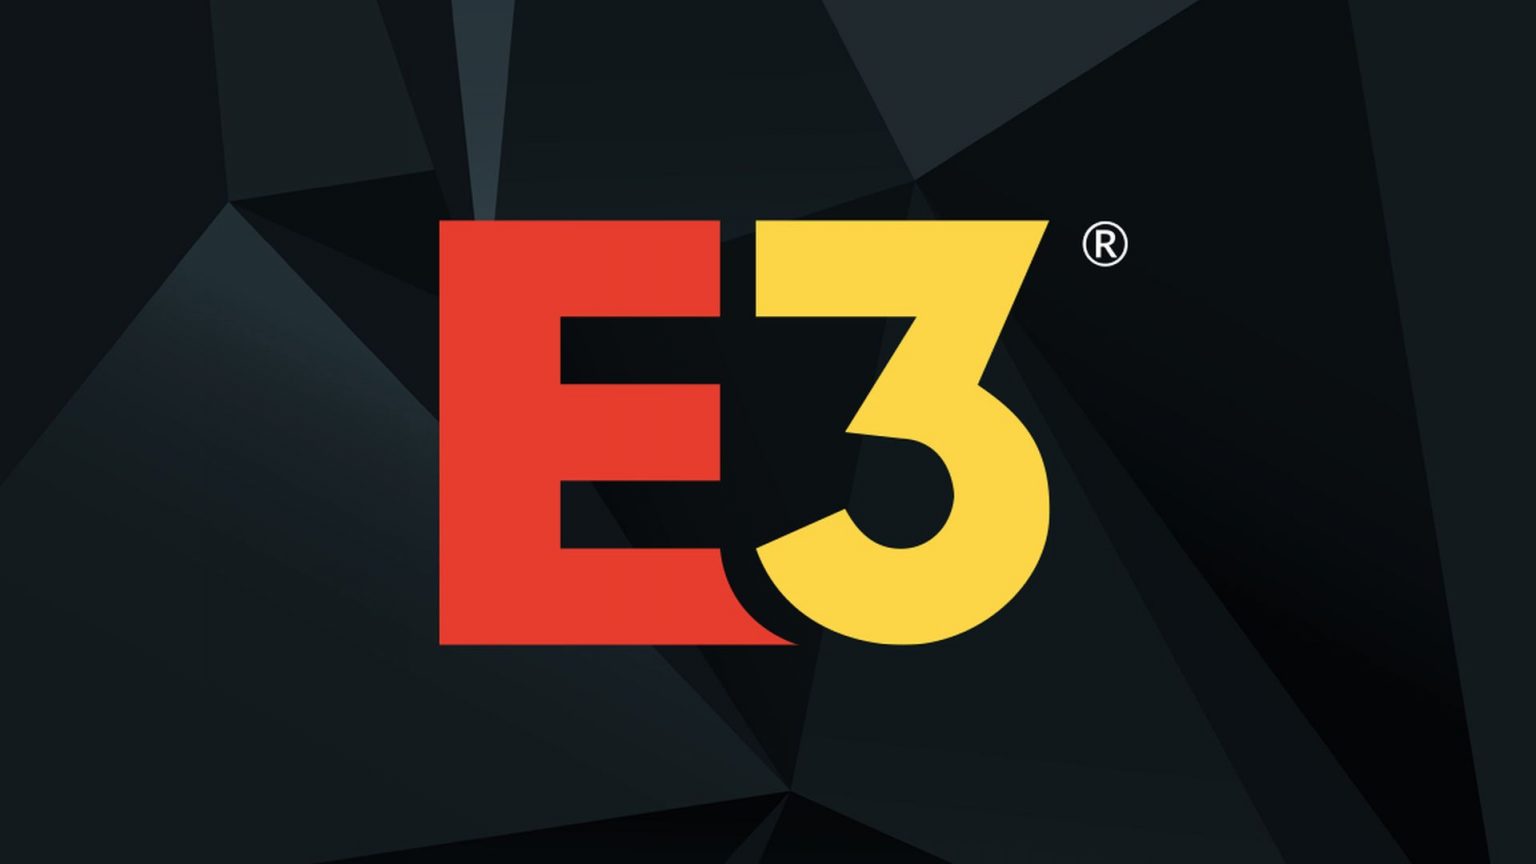 E3 2023 has Officially been Cancelled